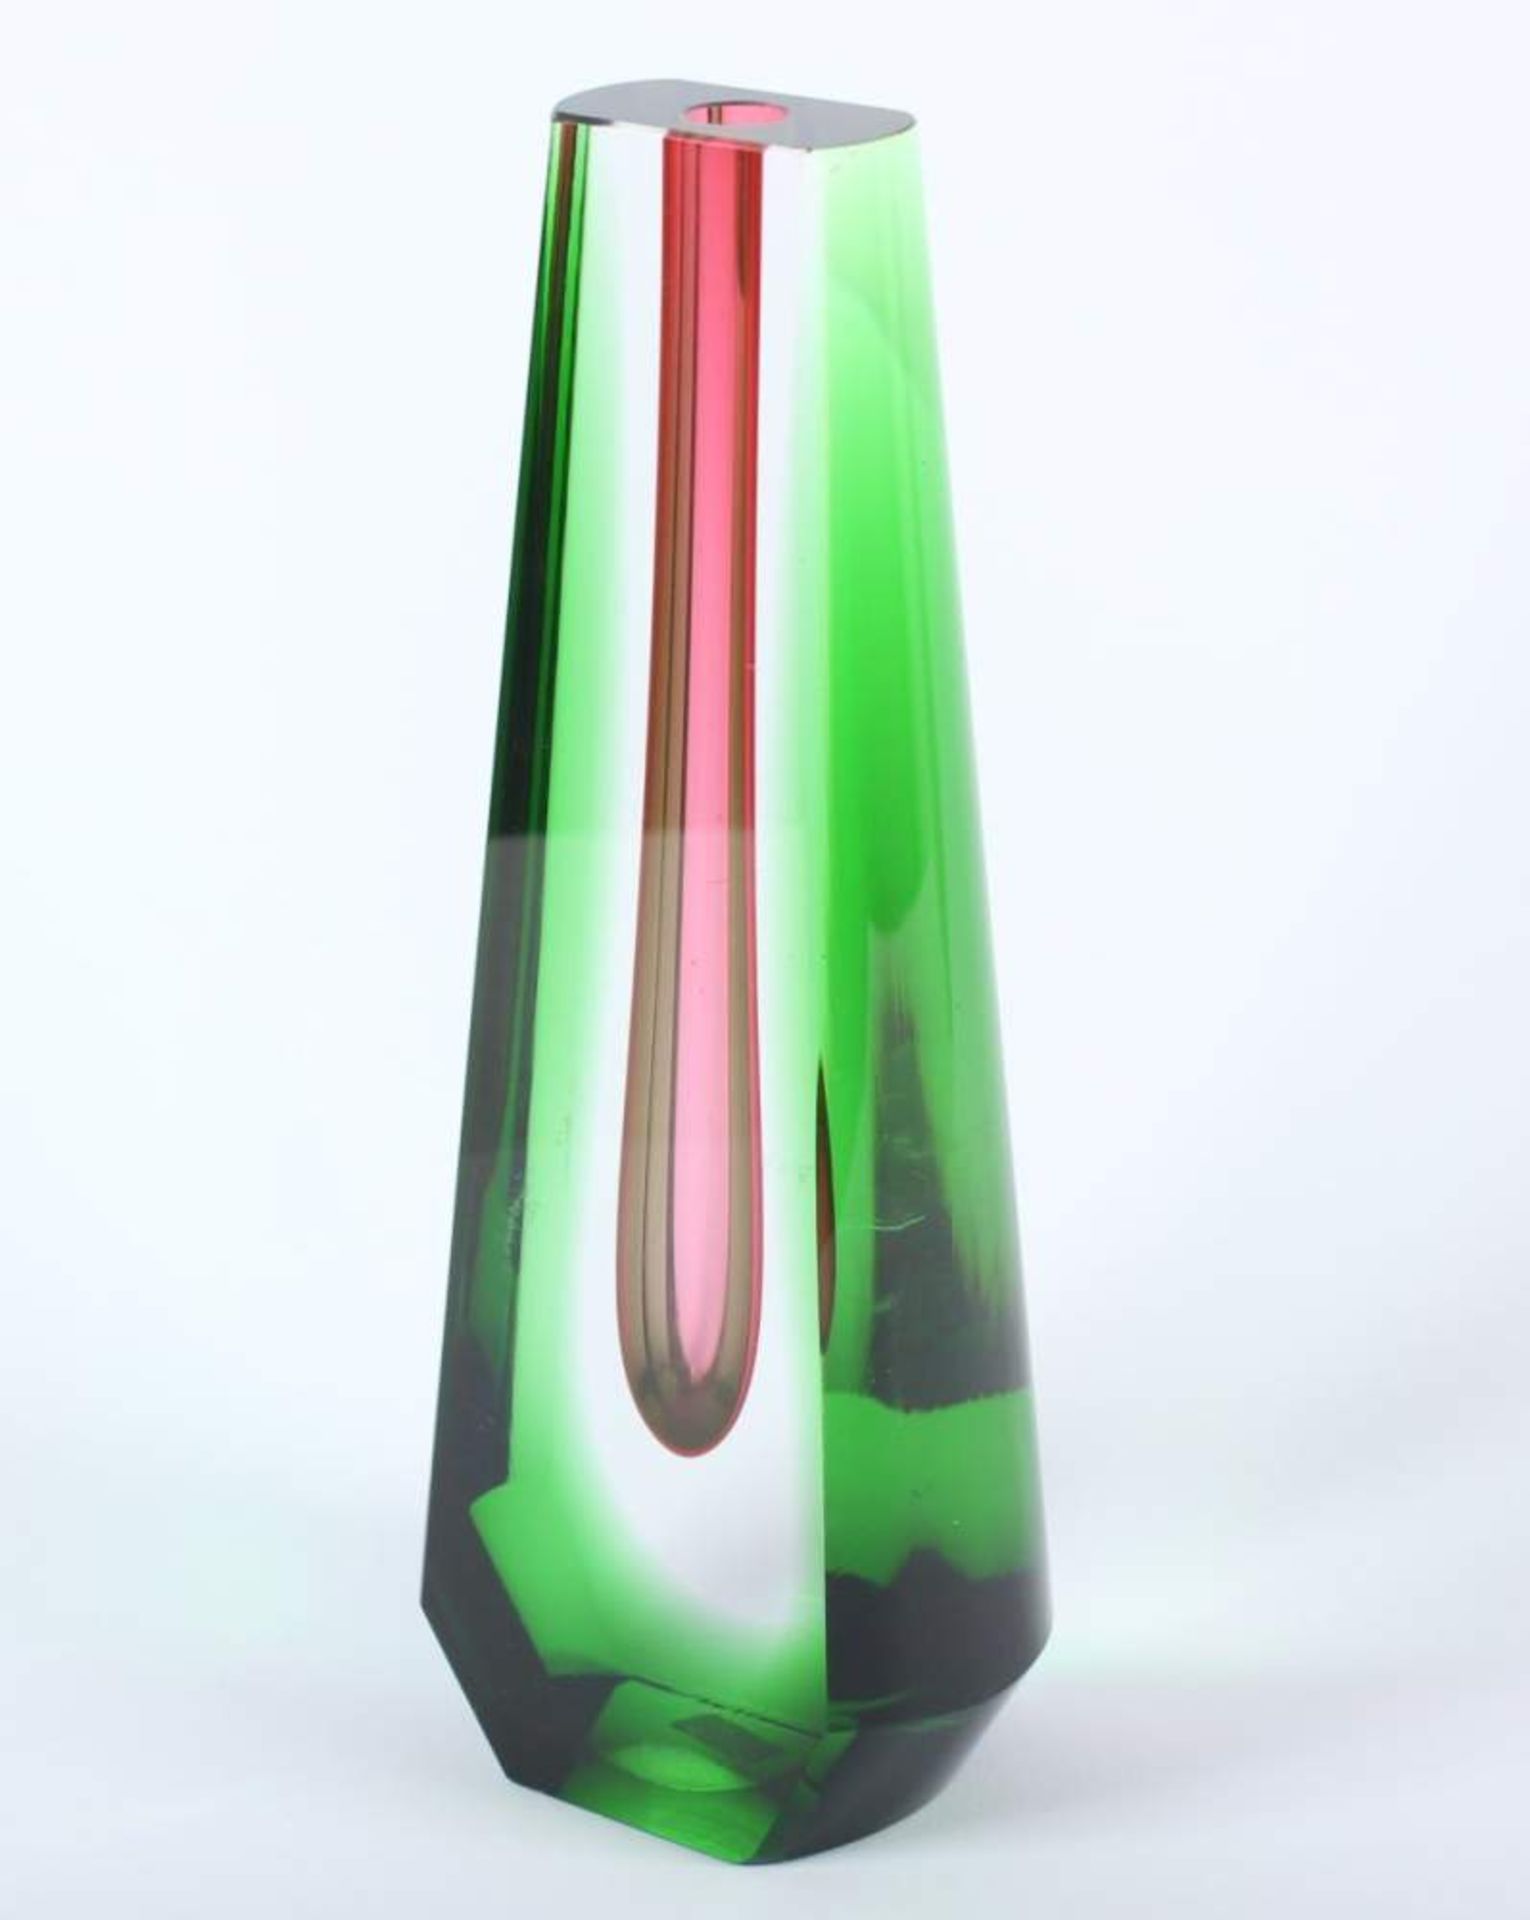 TROPFENVASE, farbloses Glas, partiell grün und pink getönt, H 25, minst.best., Entwurf Pavel